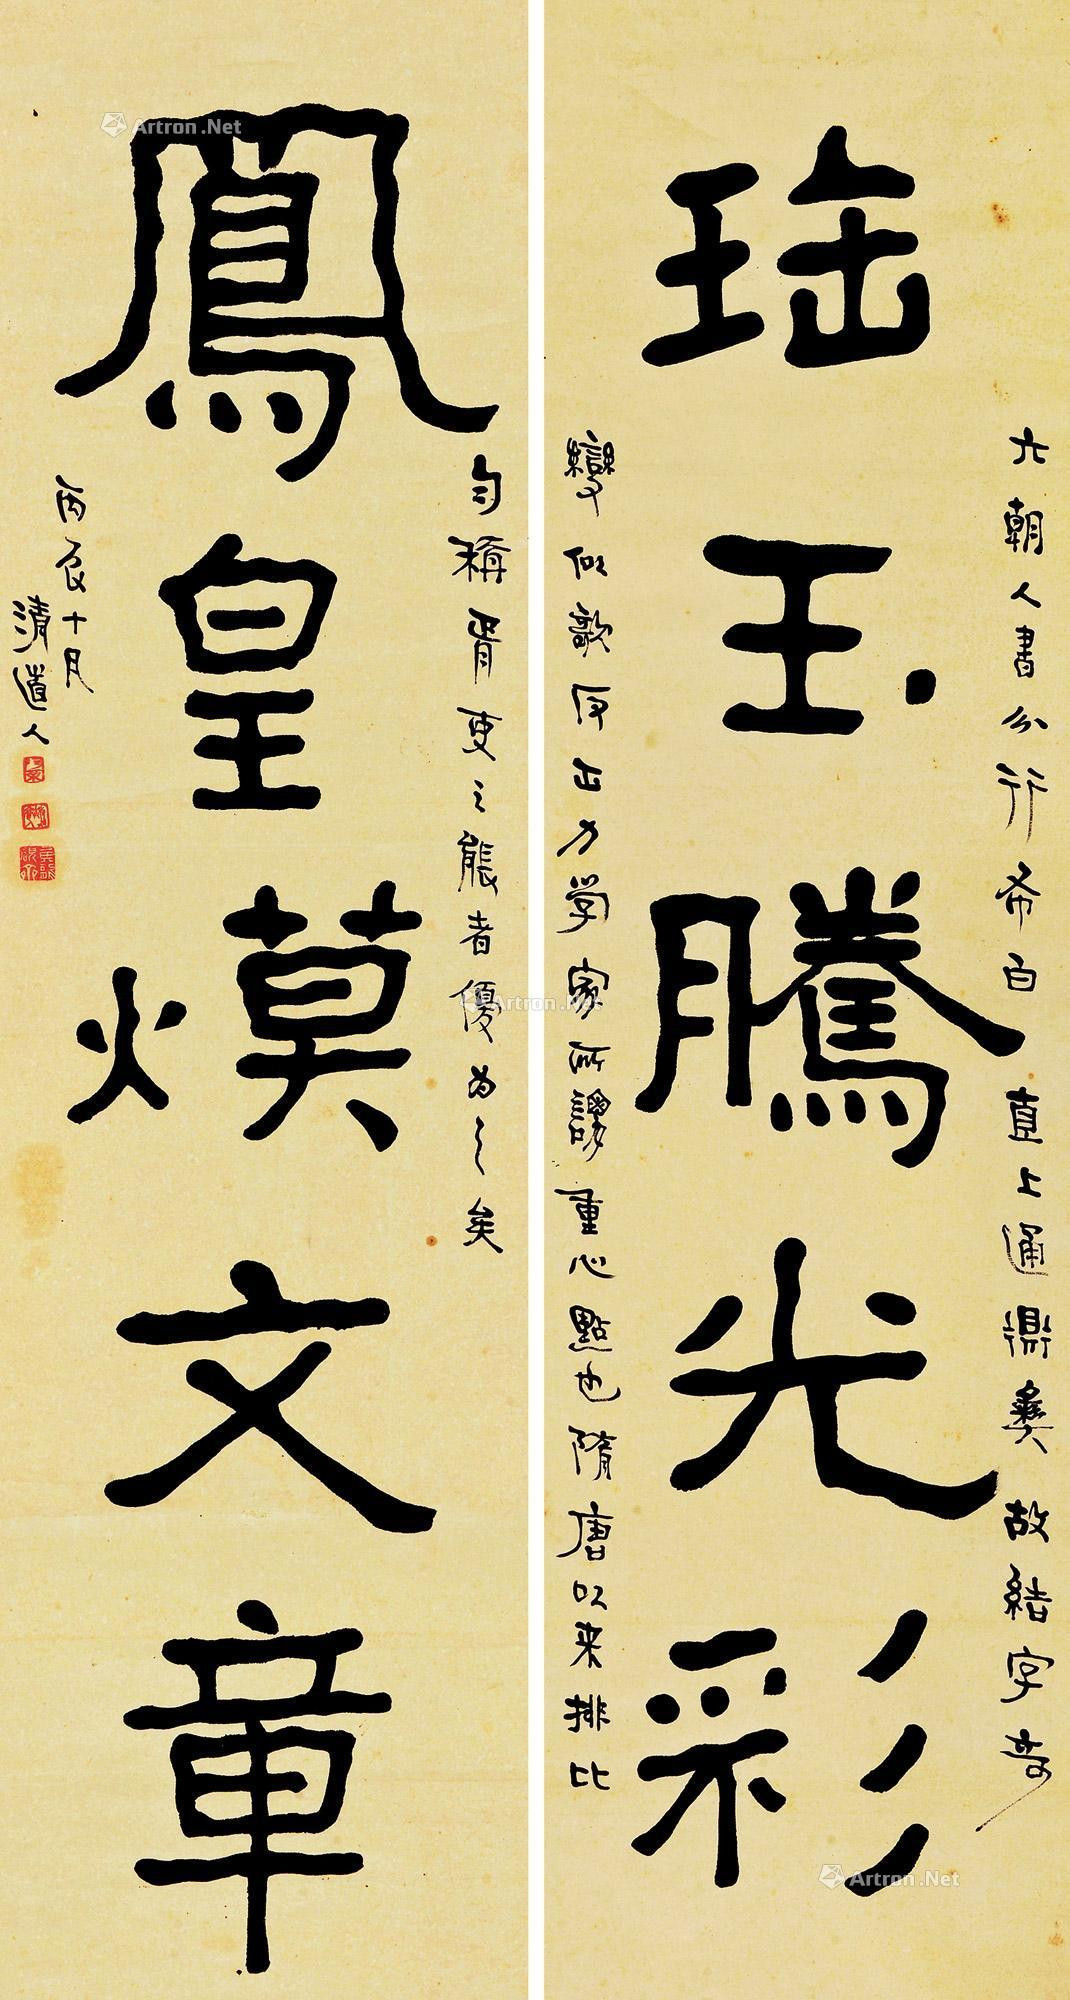 Calligraphy Couplet in Regular Script